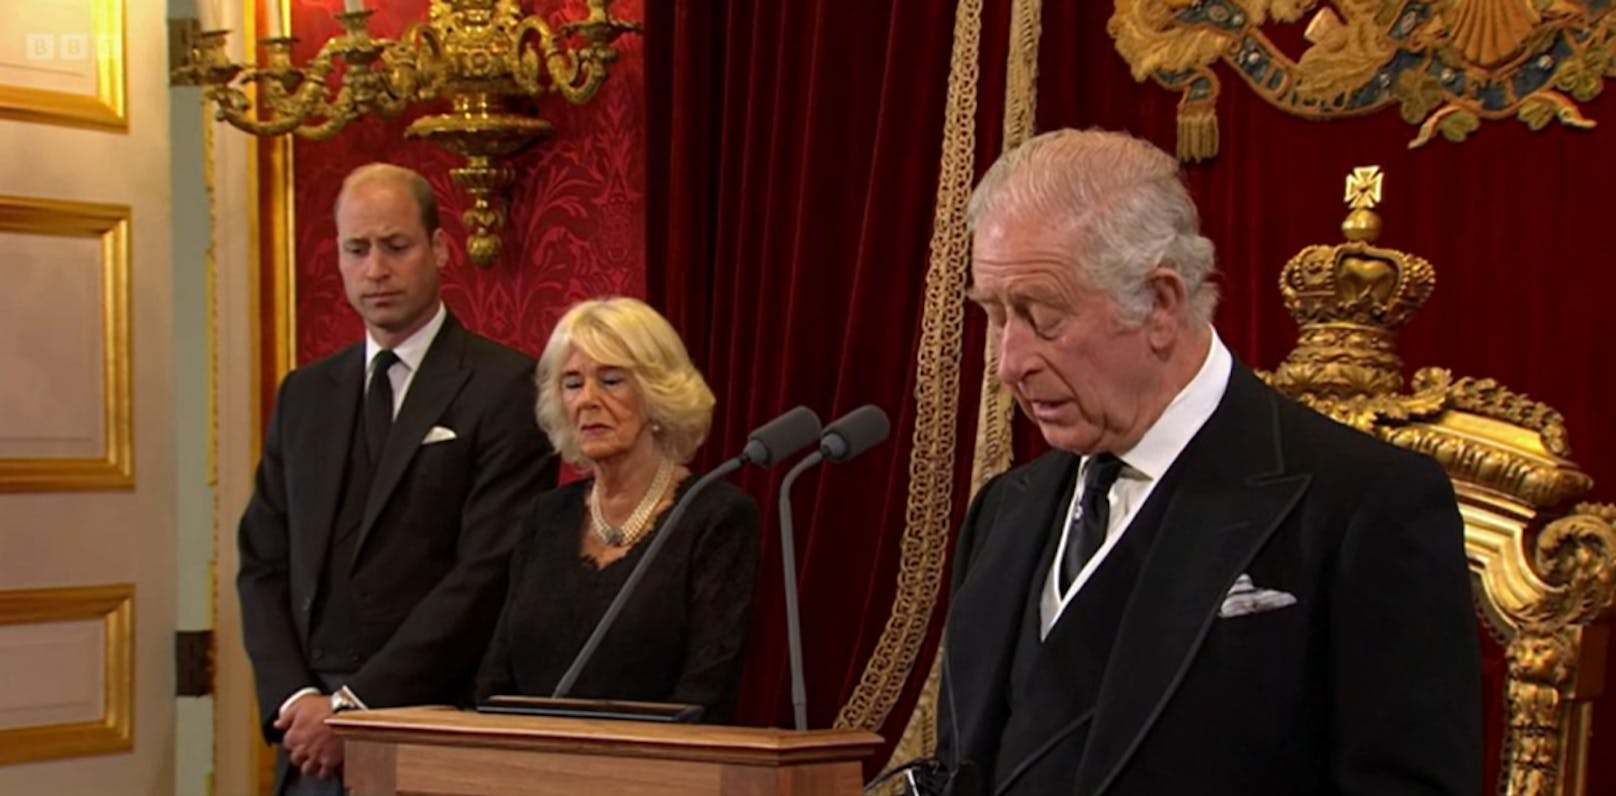 Er wird begleitet von seiner Ehefrau Camilla, Queen Consort und seinem Sohn Prinz William, Prinz of Wales.